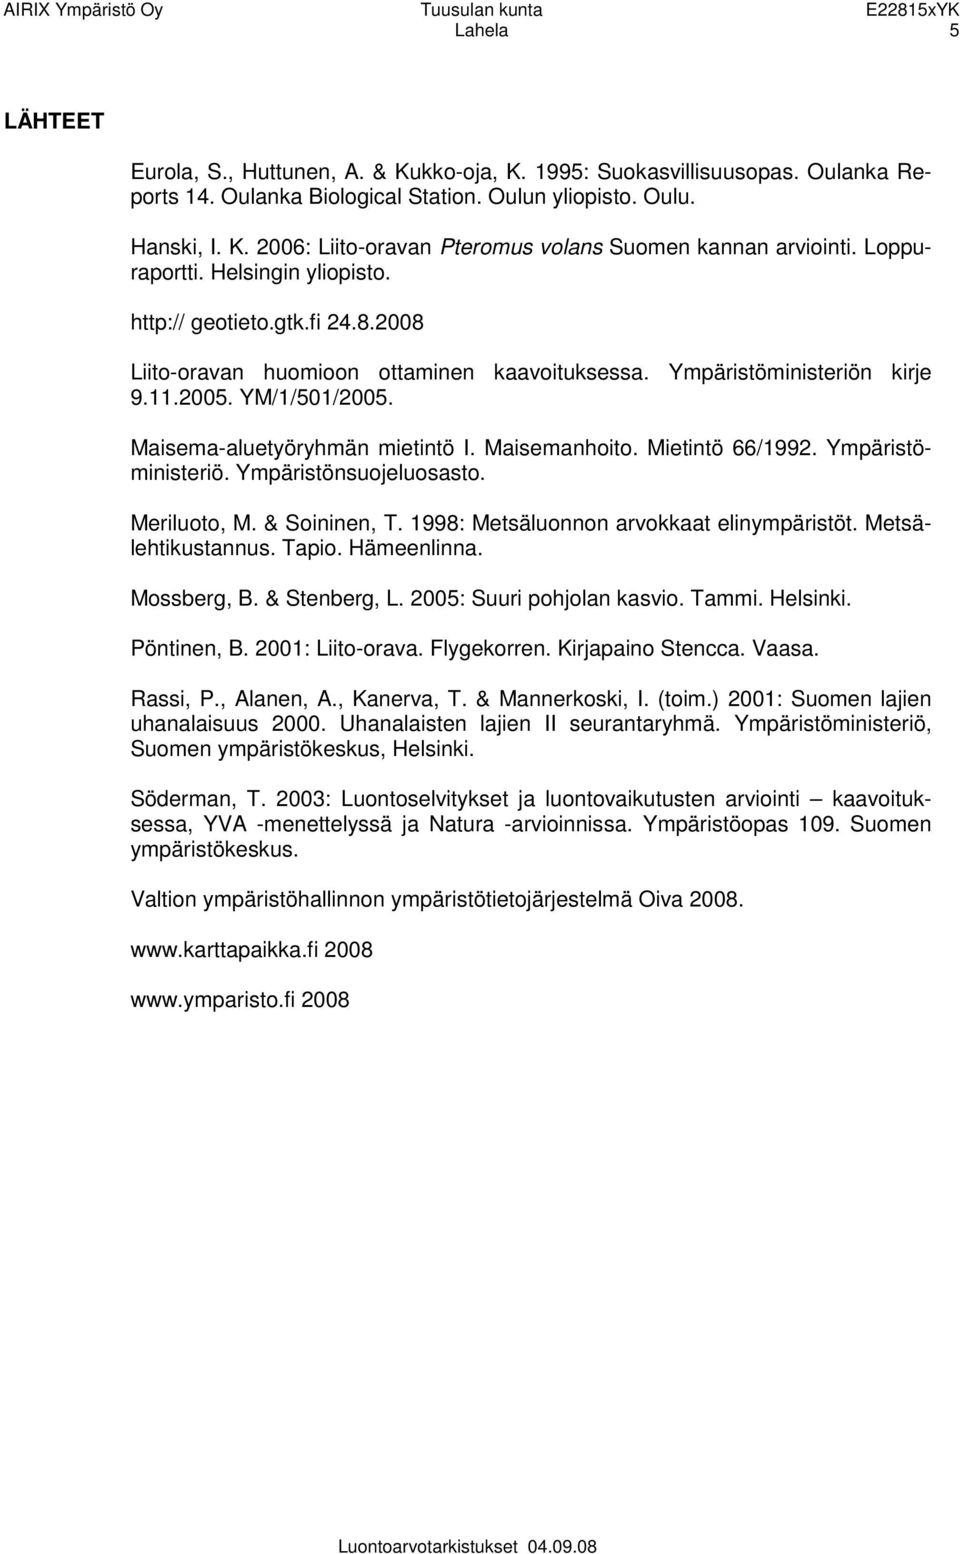 Maisema-aluetyöryhmän mietintö I. Maisemanhoito. Mietintö 66/1992. Ympäristöministeriö. Ympäristönsuojeluosasto. Meriluoto, M. & Soininen, T. 1998: Metsäluonnon arvokkaat elinympäristöt.